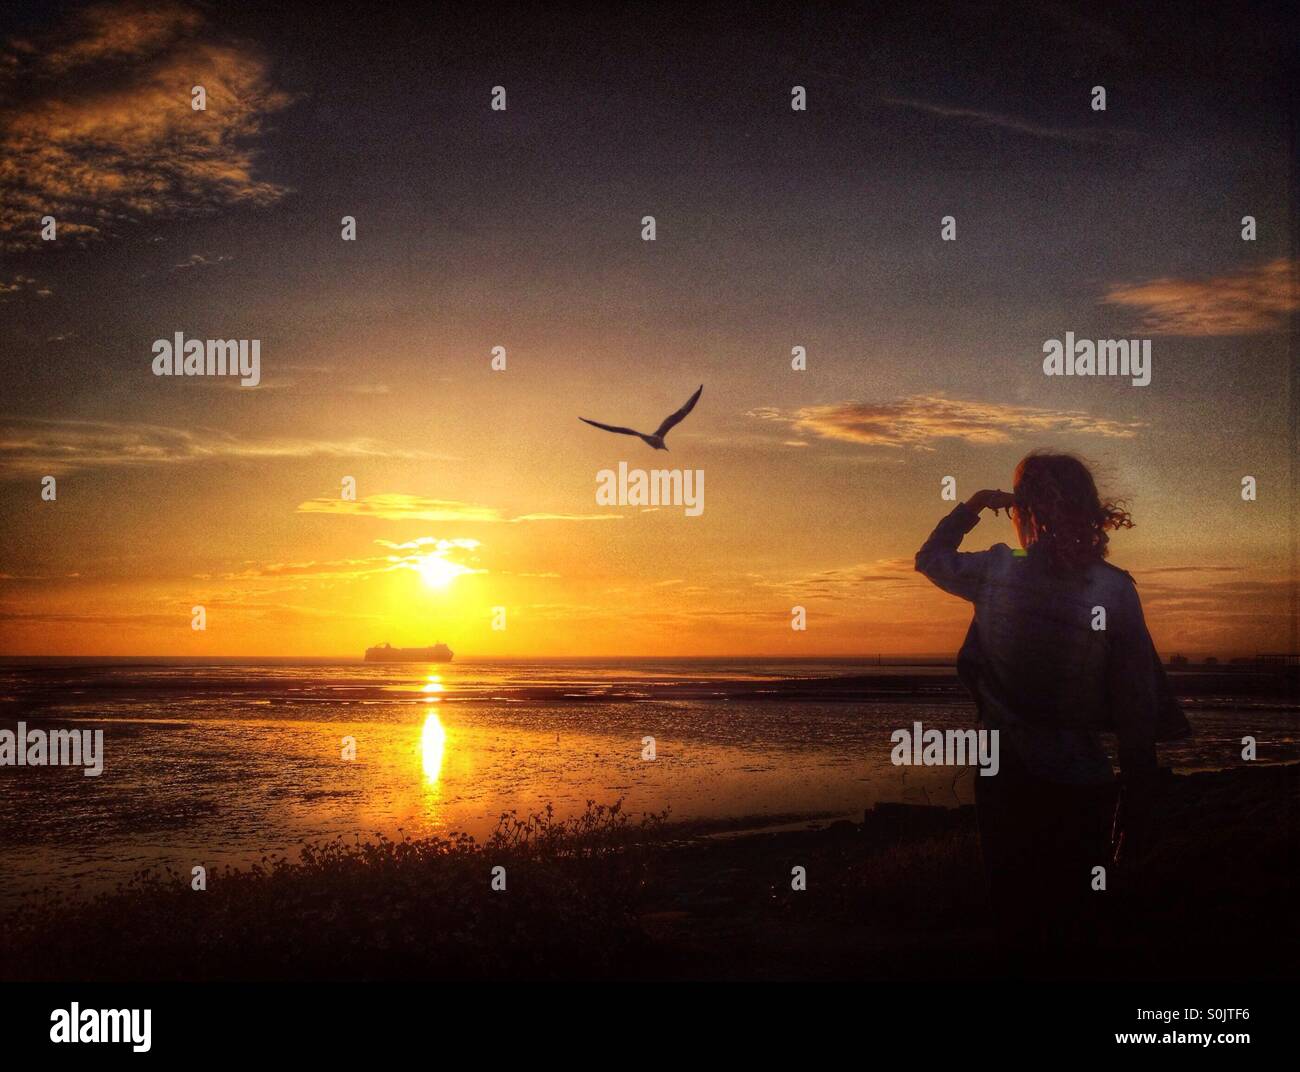 Jeune fille donnant sur la baie de Morecambe au coucher du soleil en regardant arriver ferry Heysham Banque D'Images